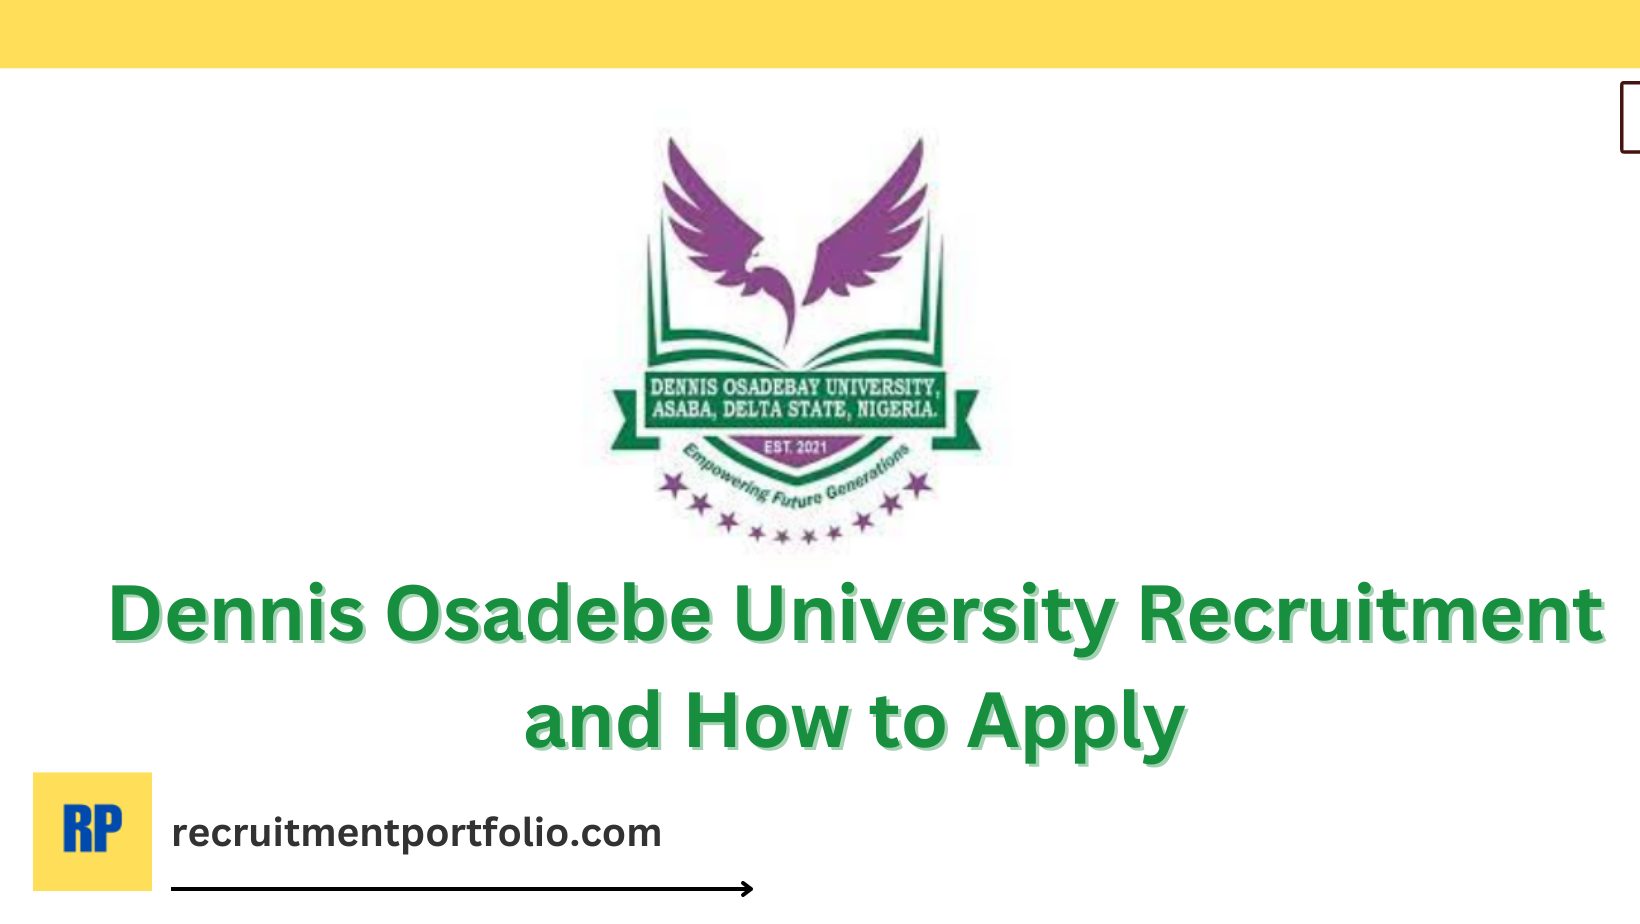 Dennis Osadebe University Recruitment